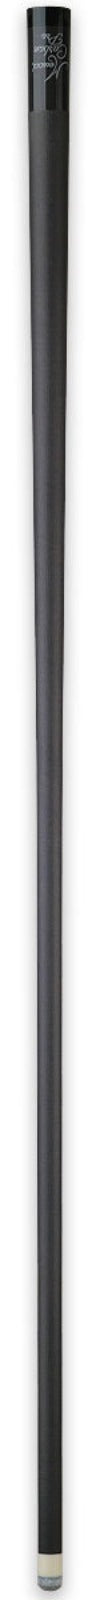 Meucci Meucci Carbon Fiber Pro Shaft - 11.9 mm 